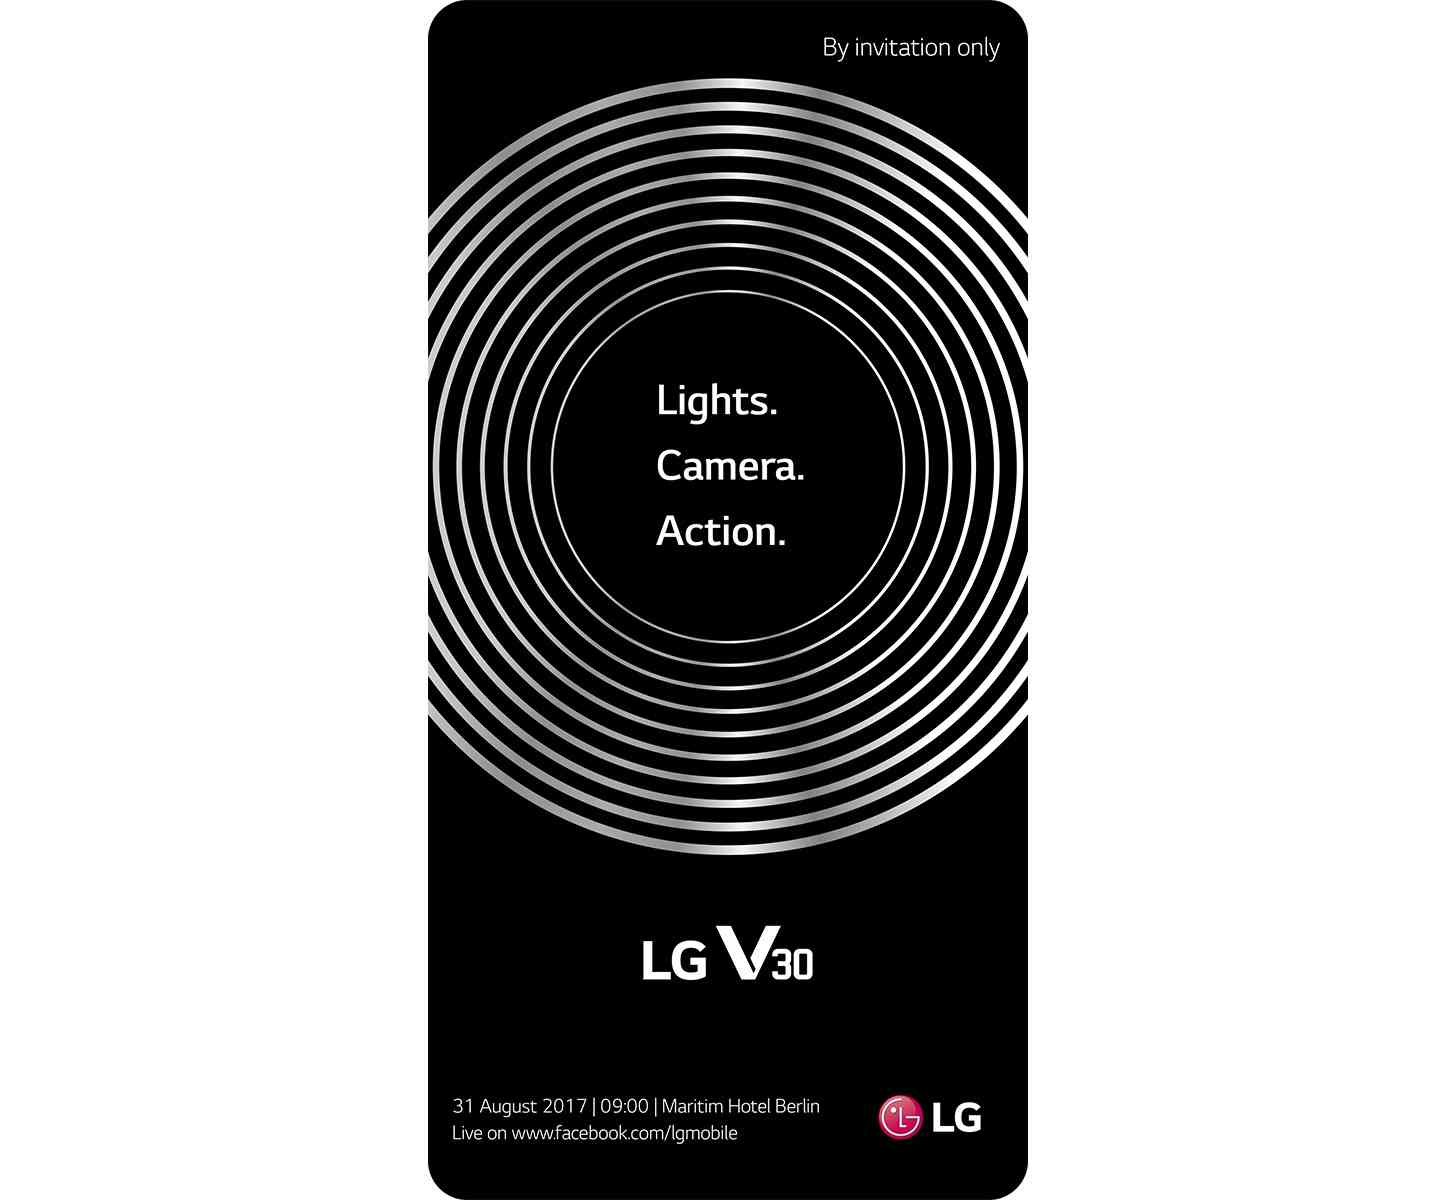 LG V30 event teaser